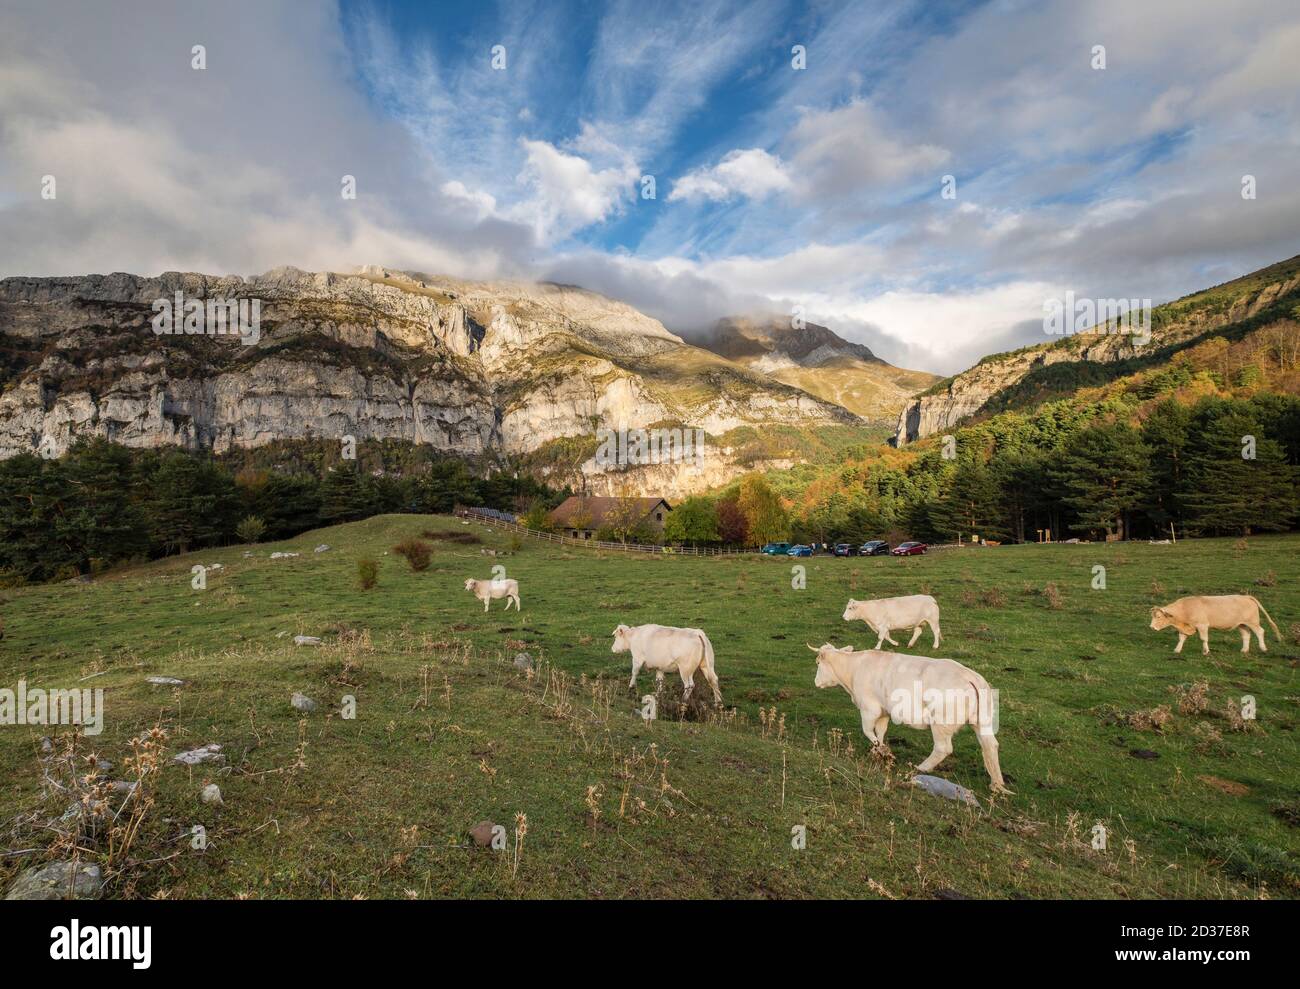 Manada de vacas pirenaicas, Gabardito, Parque natural de los Valles Occidentales, Huesca, cordillera de los pirineos, Spagna, Europa Foto Stock